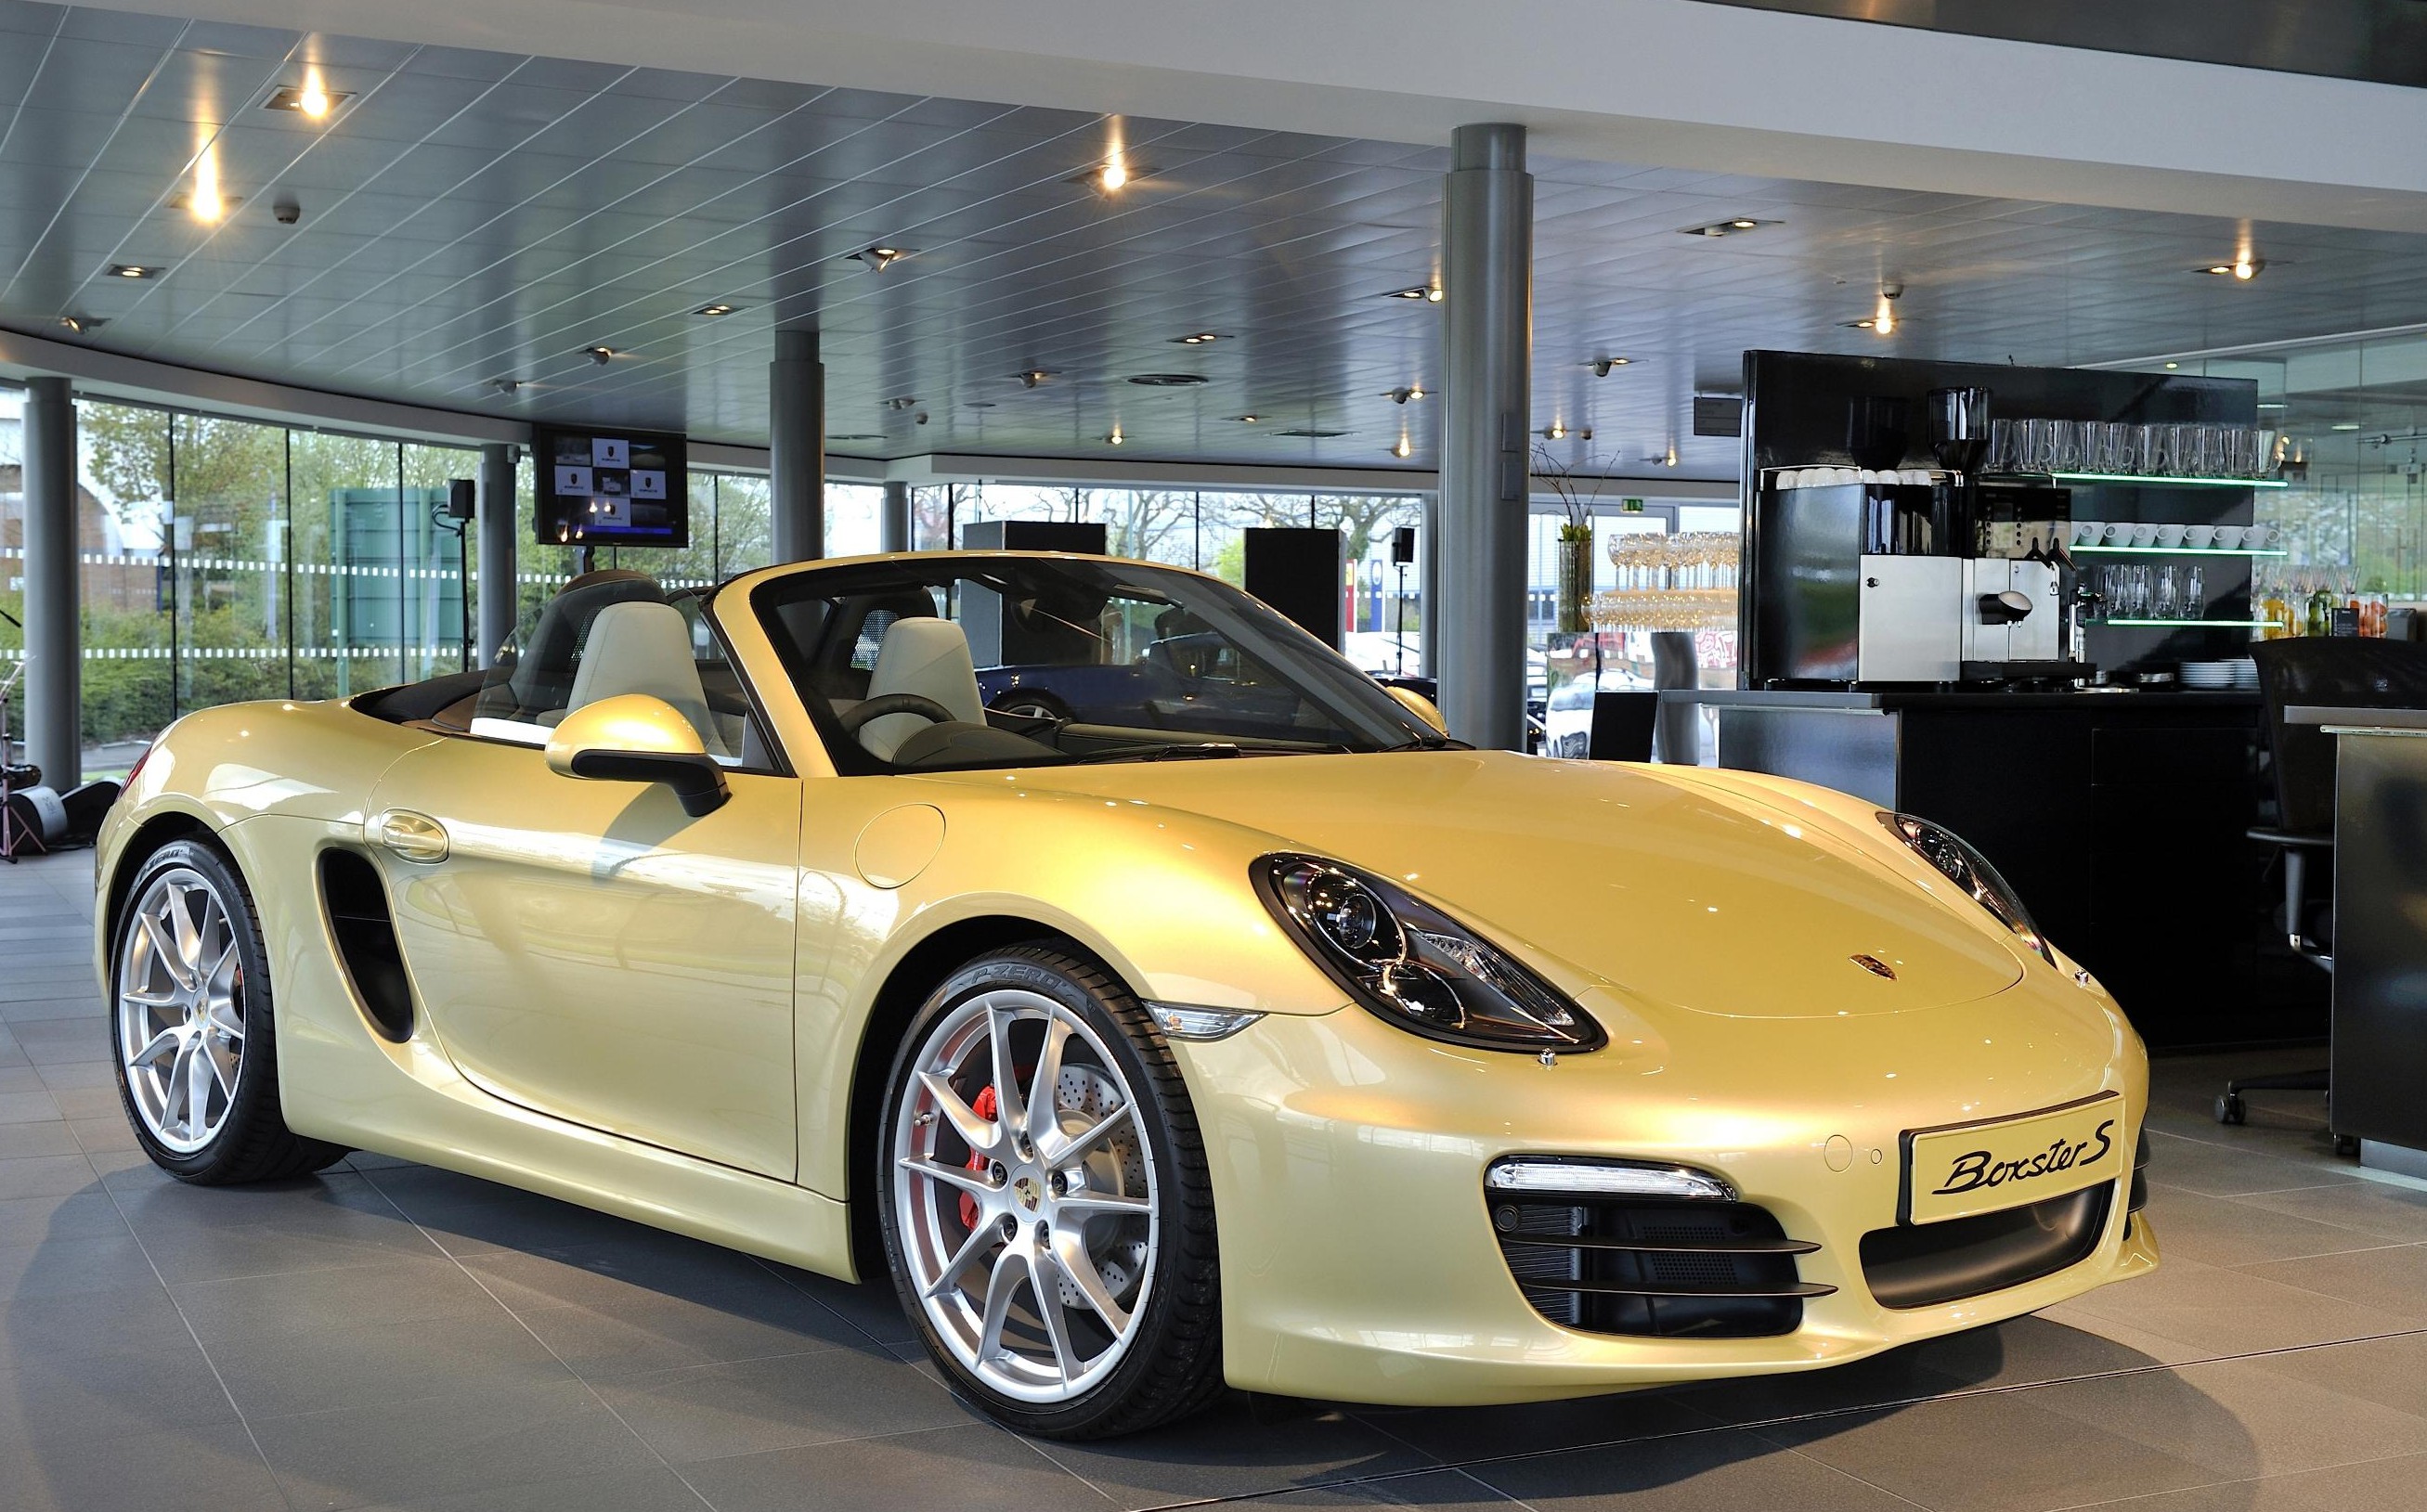 Porsche Boxster S in Porsche showroom e1336561536920